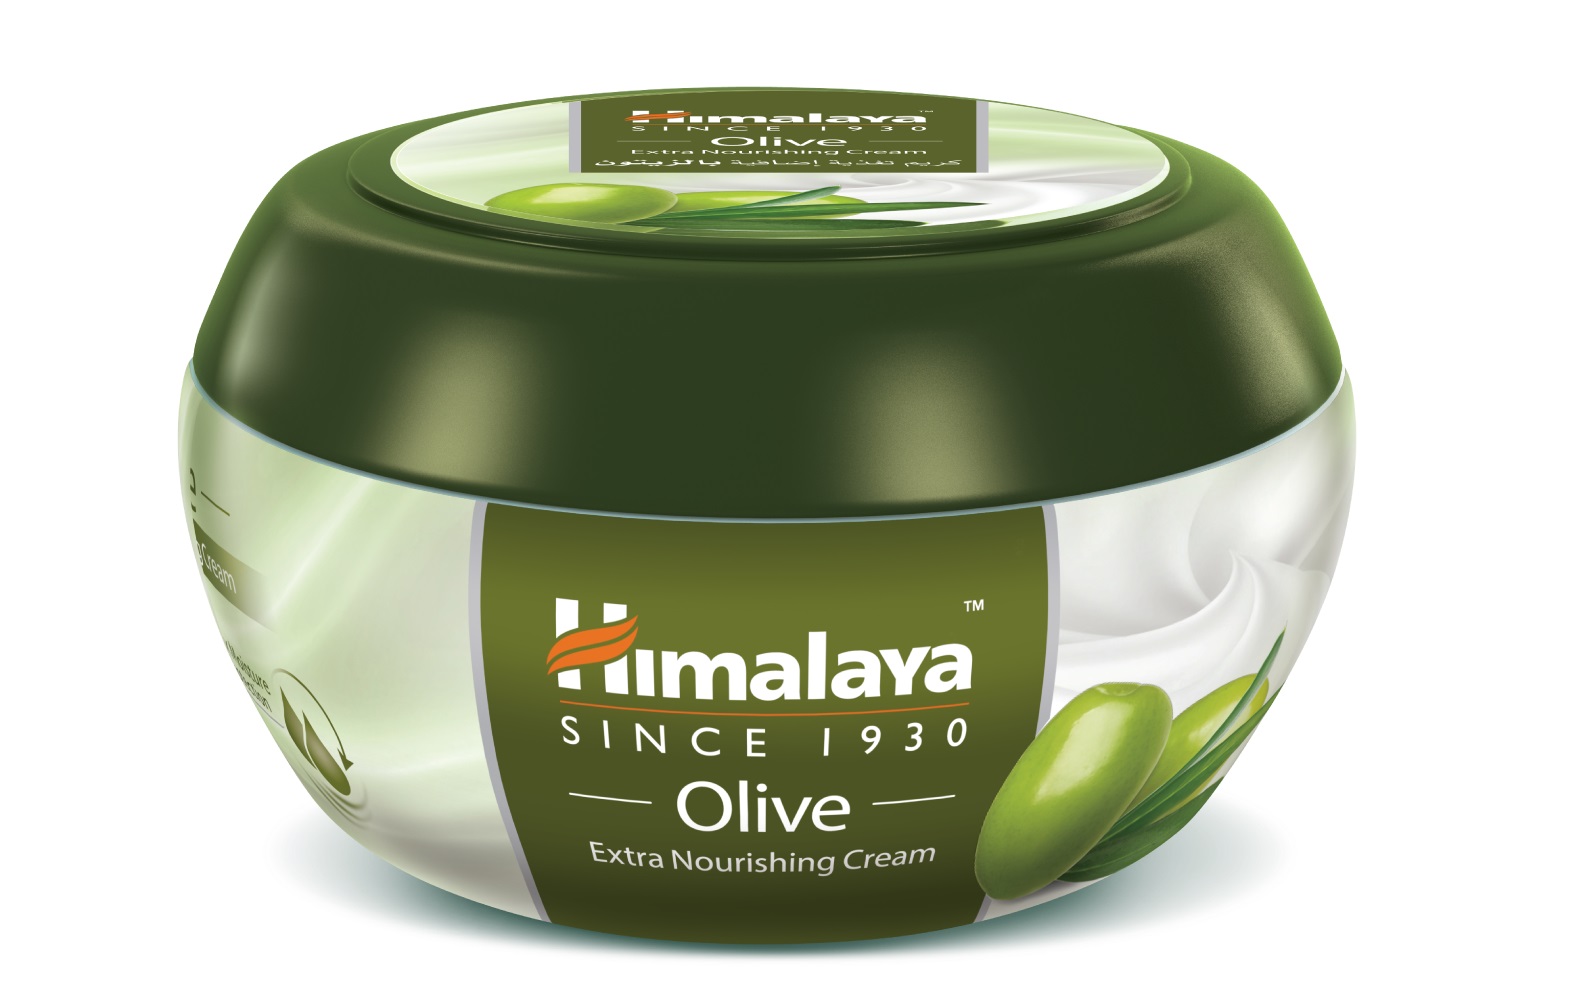 OLIVE Extra Nourishing Cream, Himalaya (ОЛИВА Экстра питательный крем, Хималая), 150 мл.